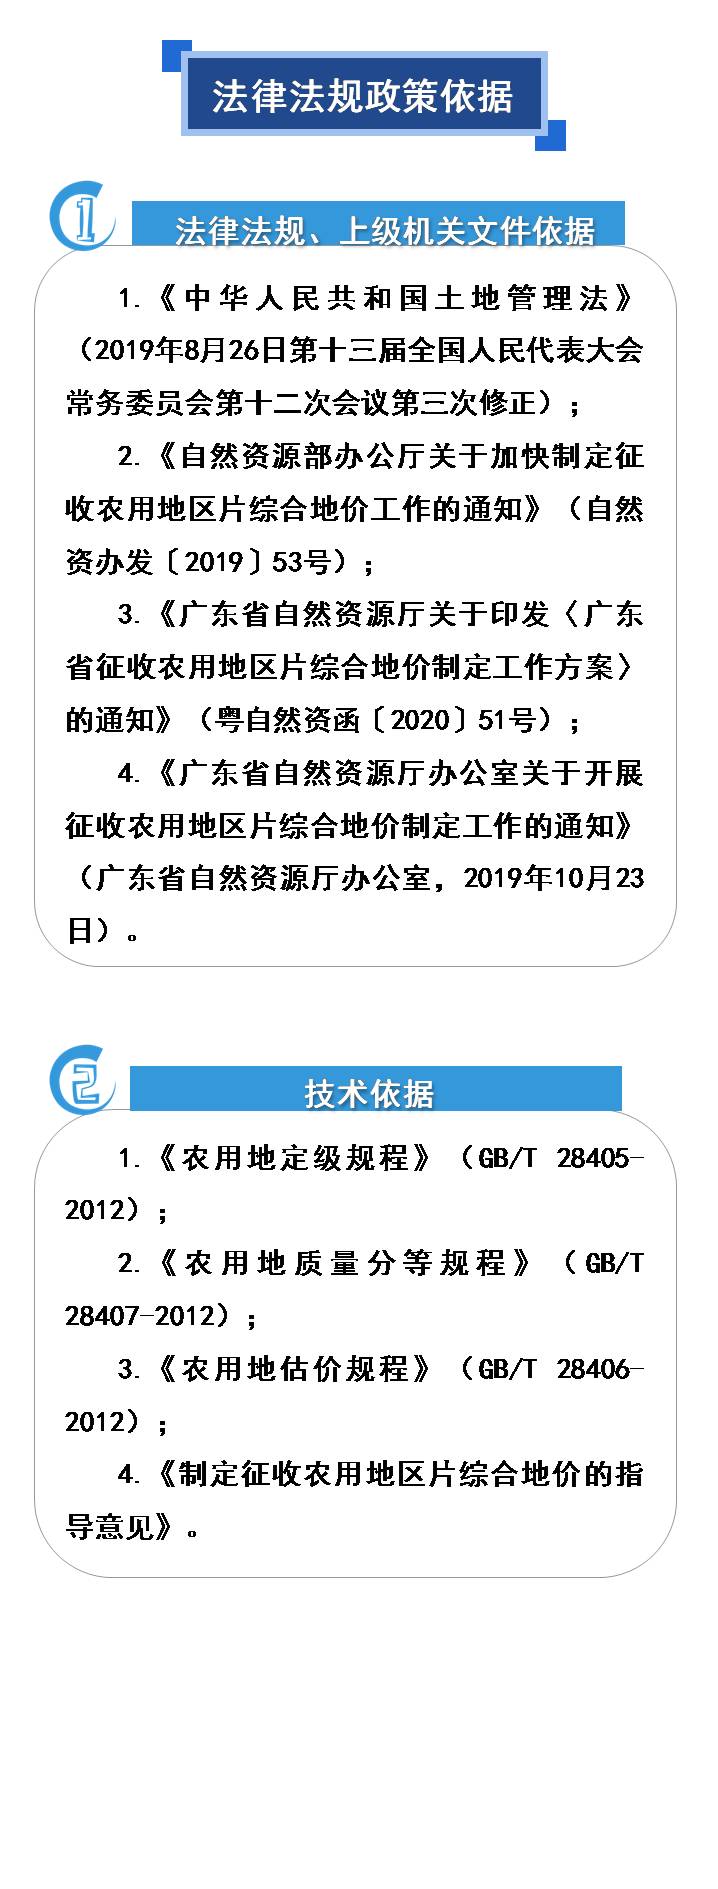 210223江门市征收农用地区片综合地价项目图解 (2).JPG